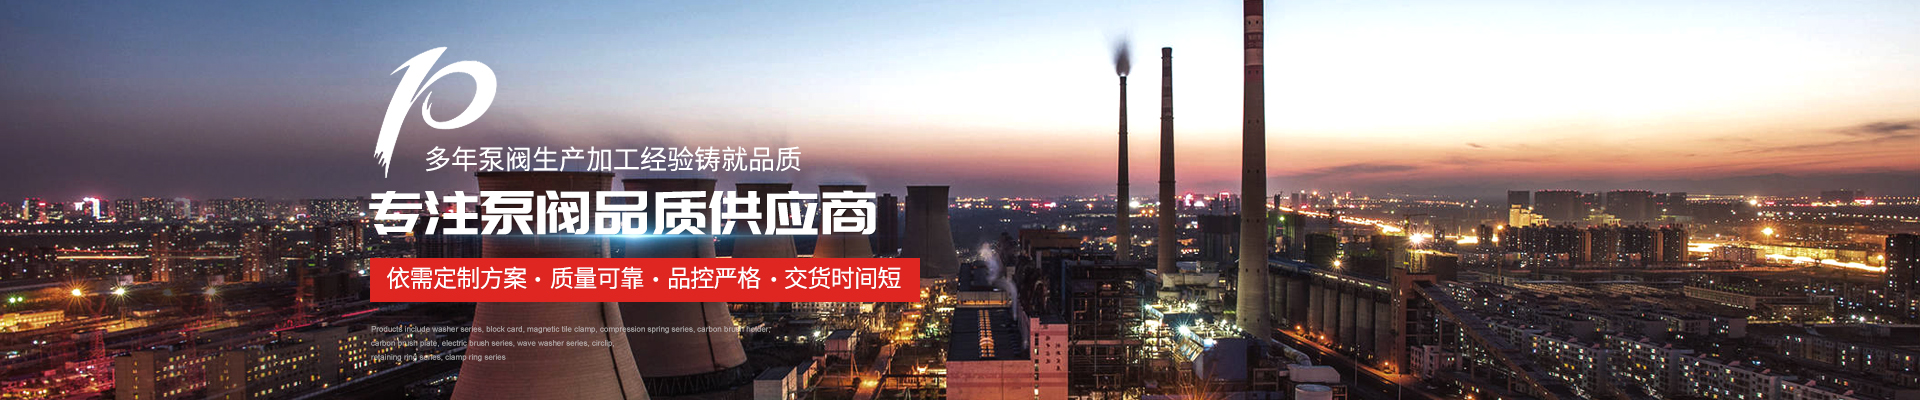 潛水排污泵_3CF控制柜技術文章 - 上海高適泵閥有限公司